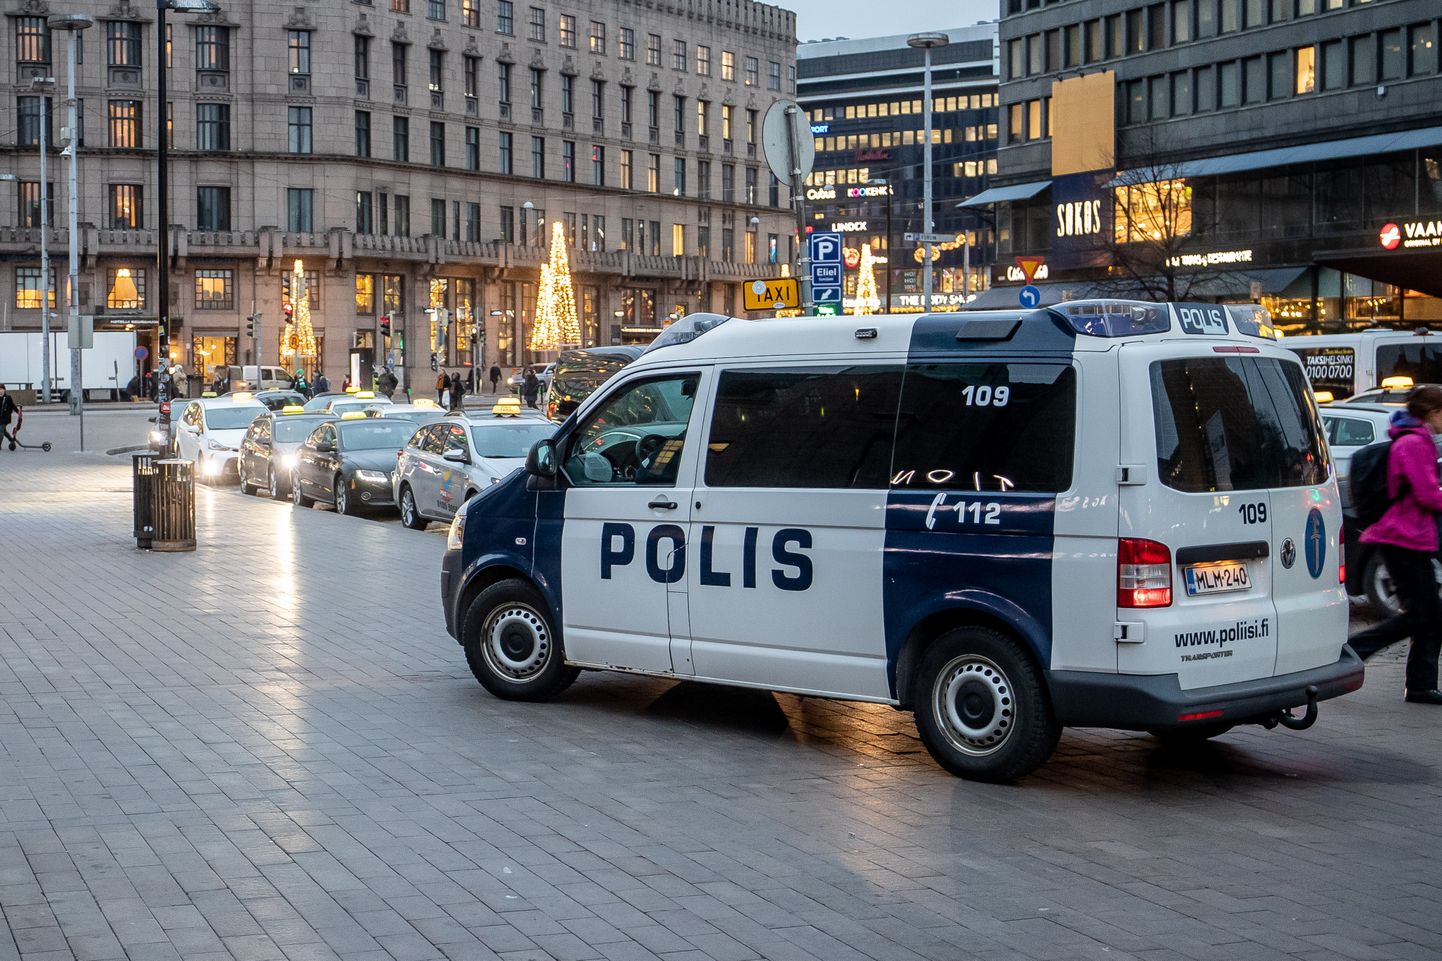 Soome politsei. Polis.